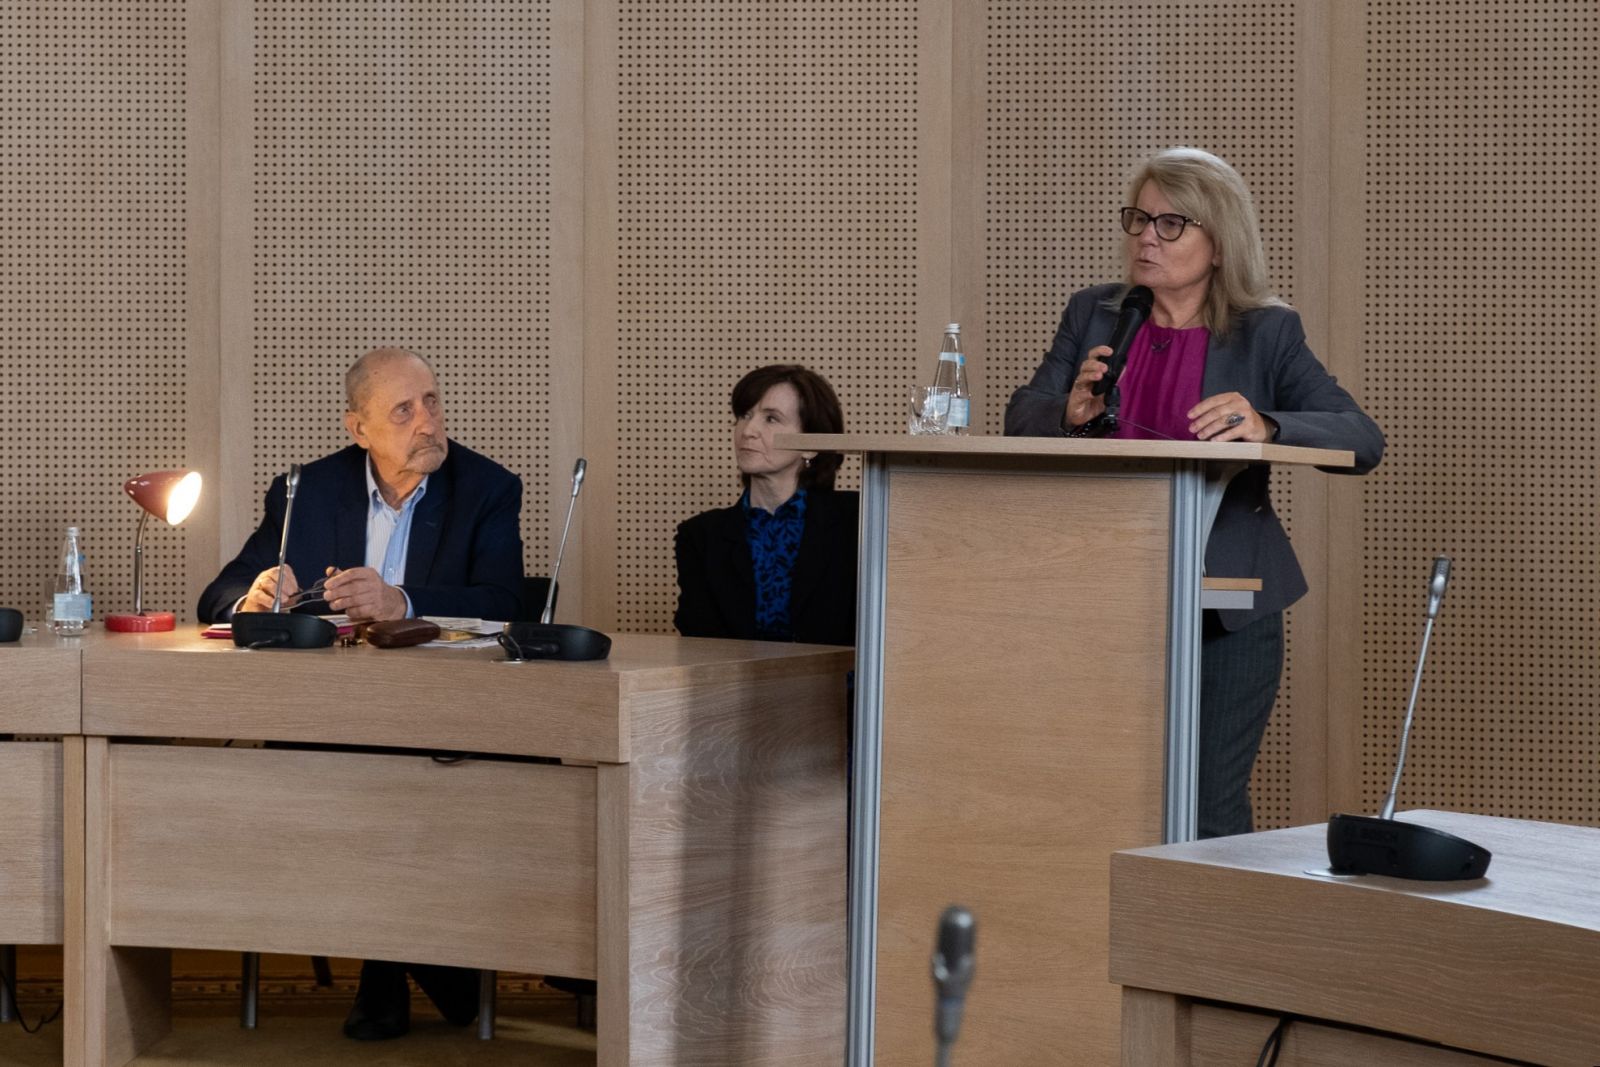 JMR prof. Bogumiła Kaniewska stoi przy mównicy w Salonie Mickiewicza, obok niej siedzą: prof. Edward Balcerzan i prof. Elżbieta Winiecka